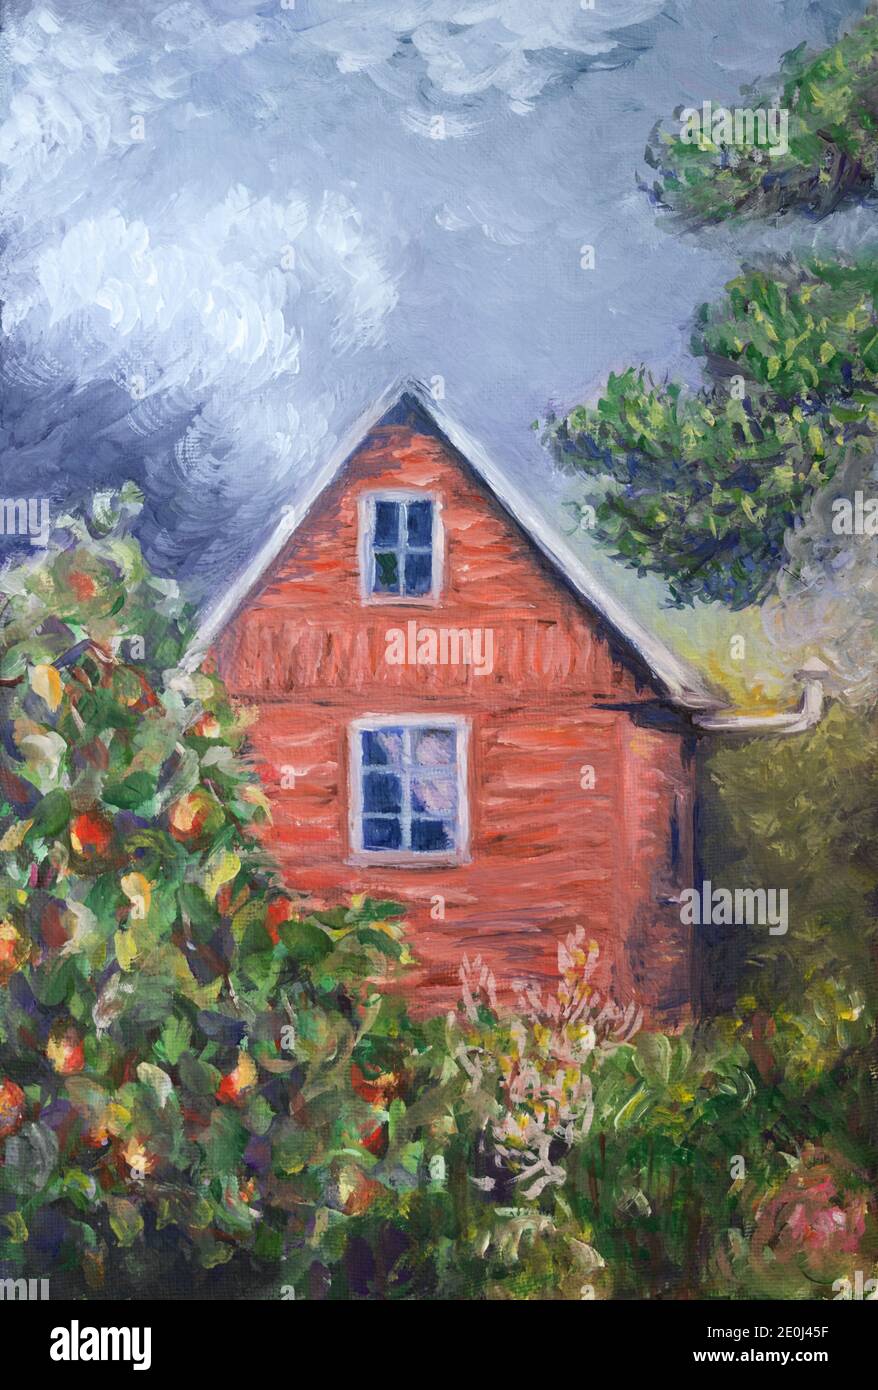 Petite maison en zone rurale. Peinture à la gouache sur toile Photo Stock -  Alamy